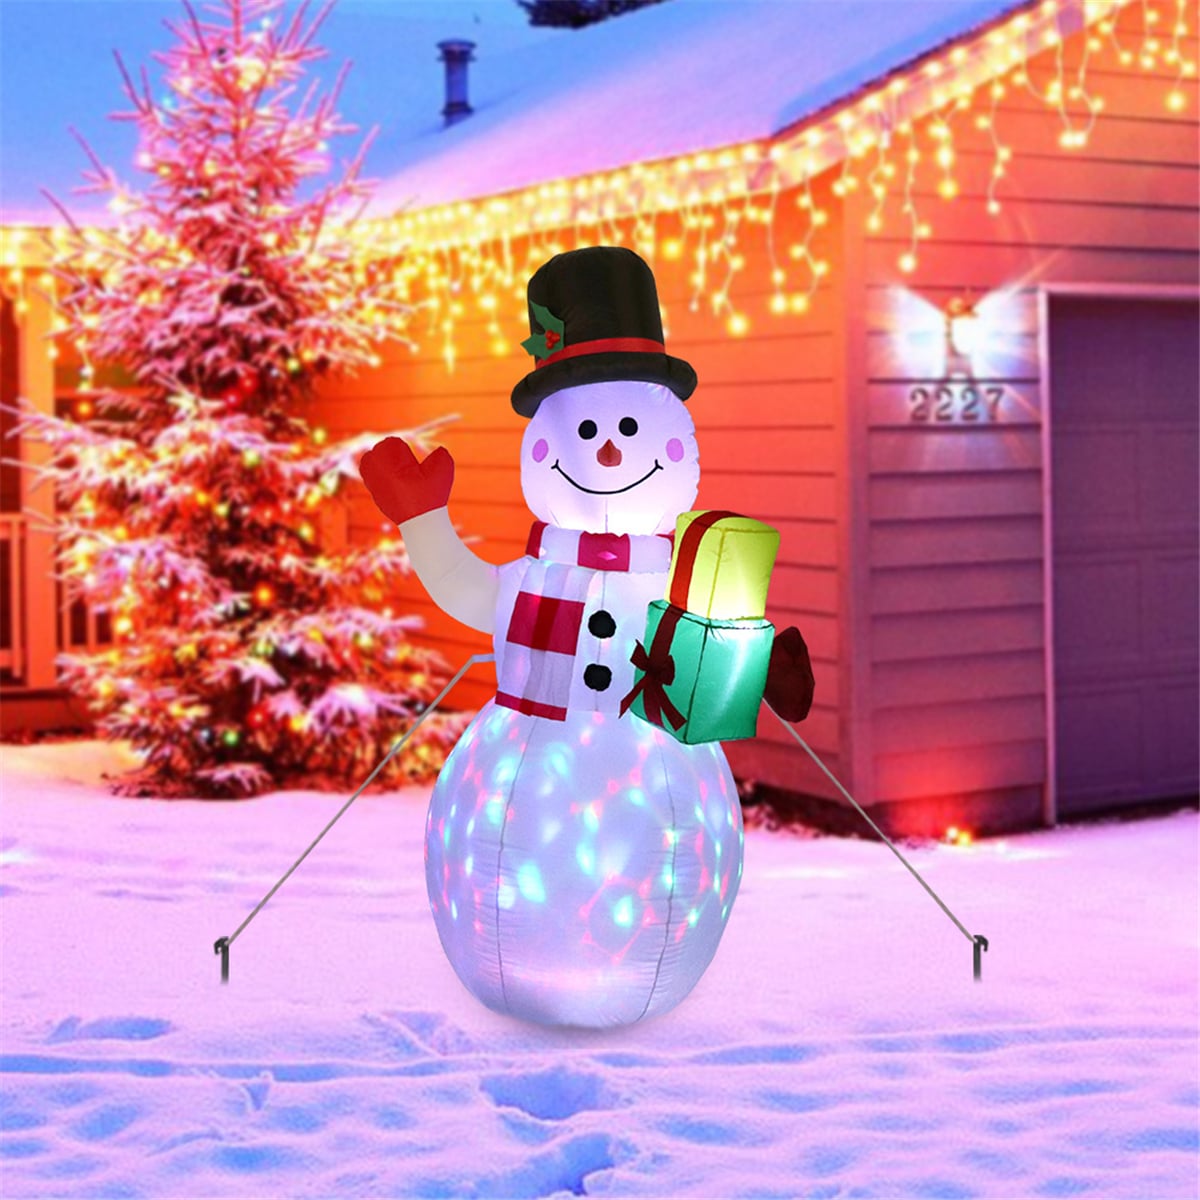 Надувной светящийся снеговик «Счастливого рождества» купить на Алиэкспресс